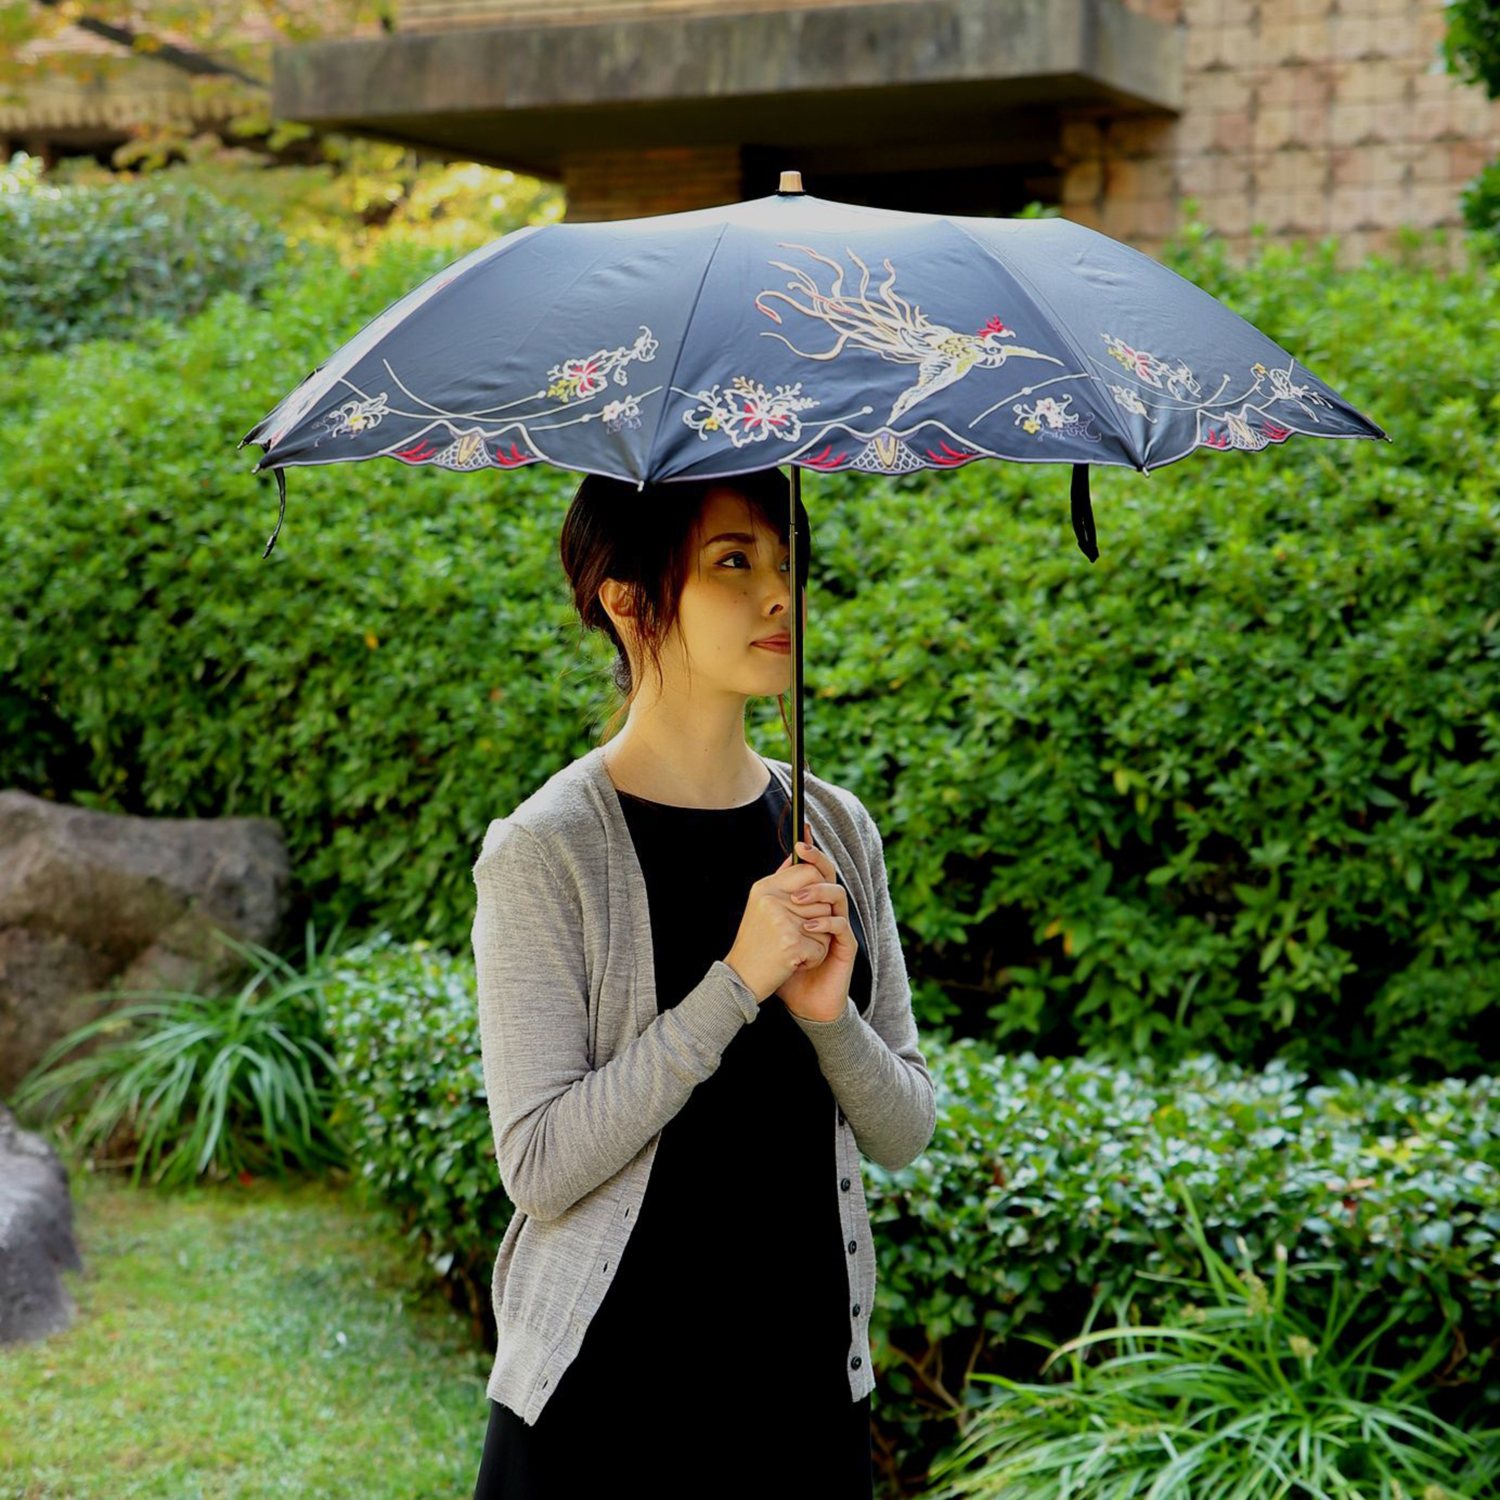 シノワズリーモダン 女優日傘プレミアム 鳳凰刺しゅう かわず張り 晴雨兼用折りたたみ傘